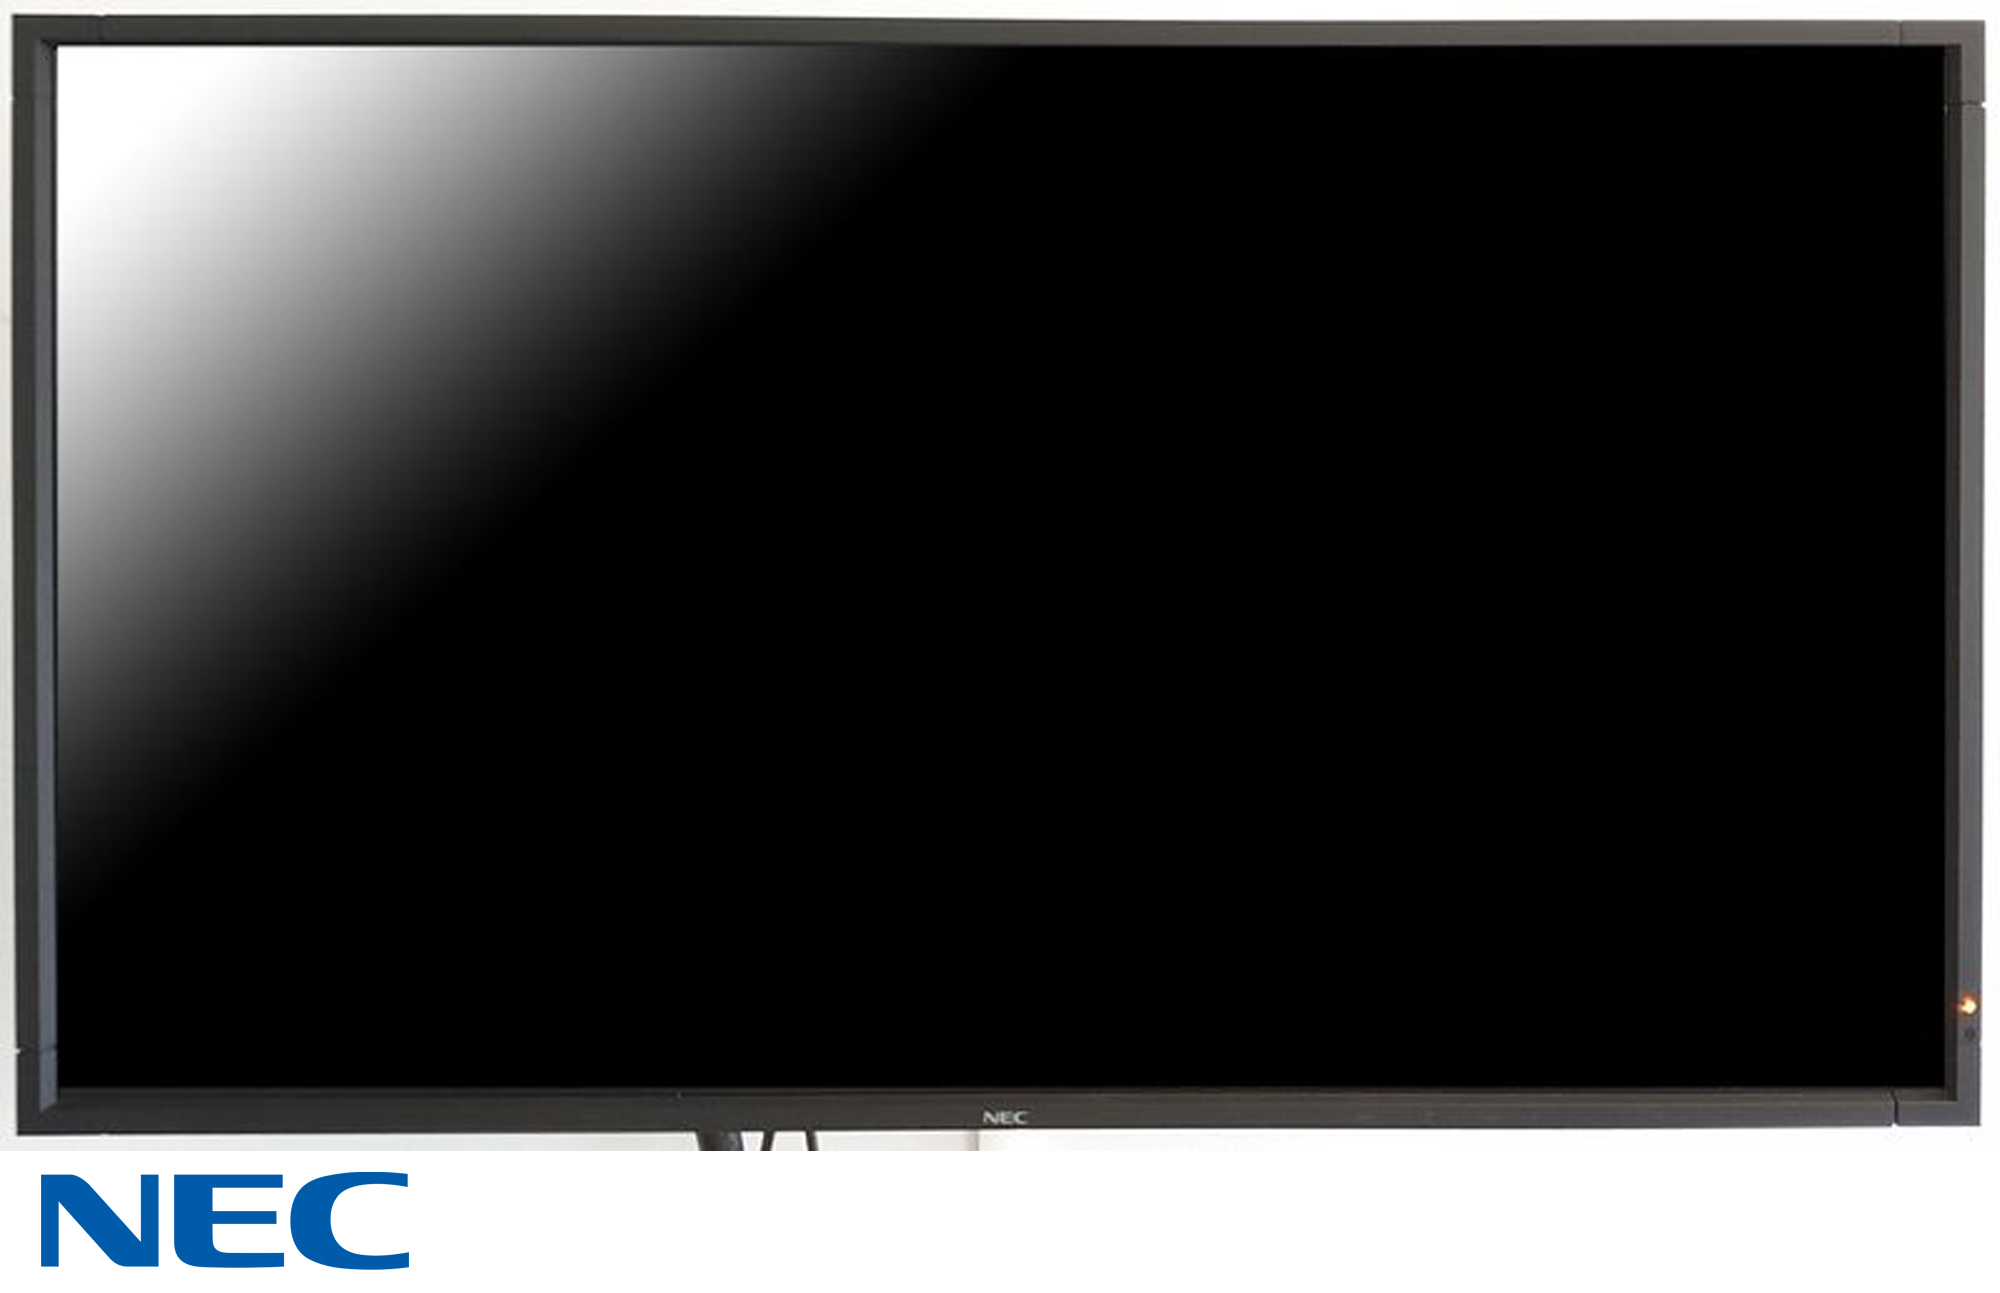 MONITEUR A ECRAN LCD DE 40 POUCES DE MARQUE NEC MODELE L406T6 VENDU AVEC SON SUPPORT MURAL. R0.45